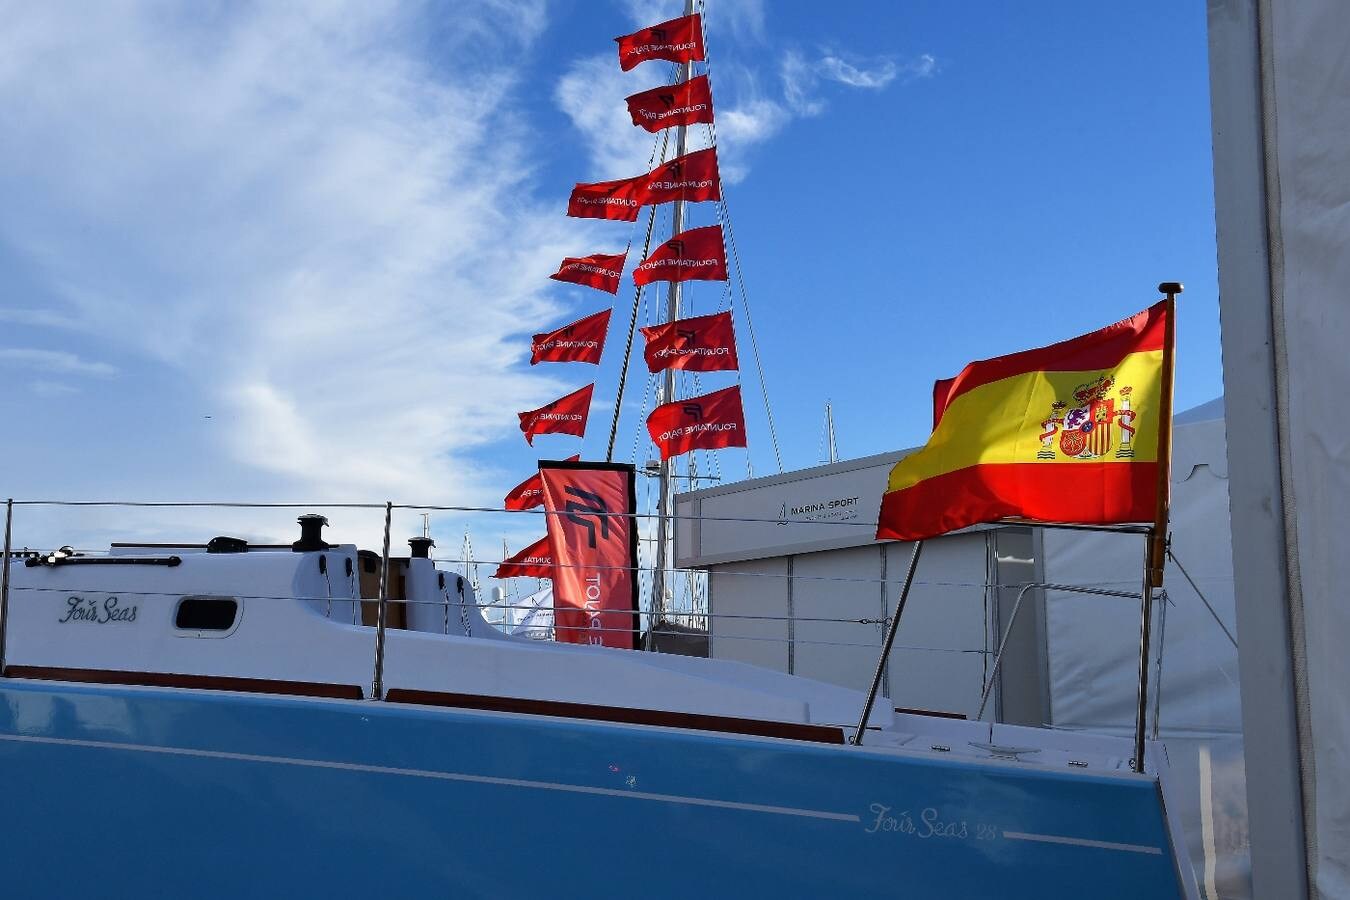 El salón náutico, que se inauguró el miércoles y se ha clausurado este domingo día 5 con una jornada de puertas abiertas, confirma su pujanza con más expositores, ventas y visitas de compradores en la Marina de Valencia